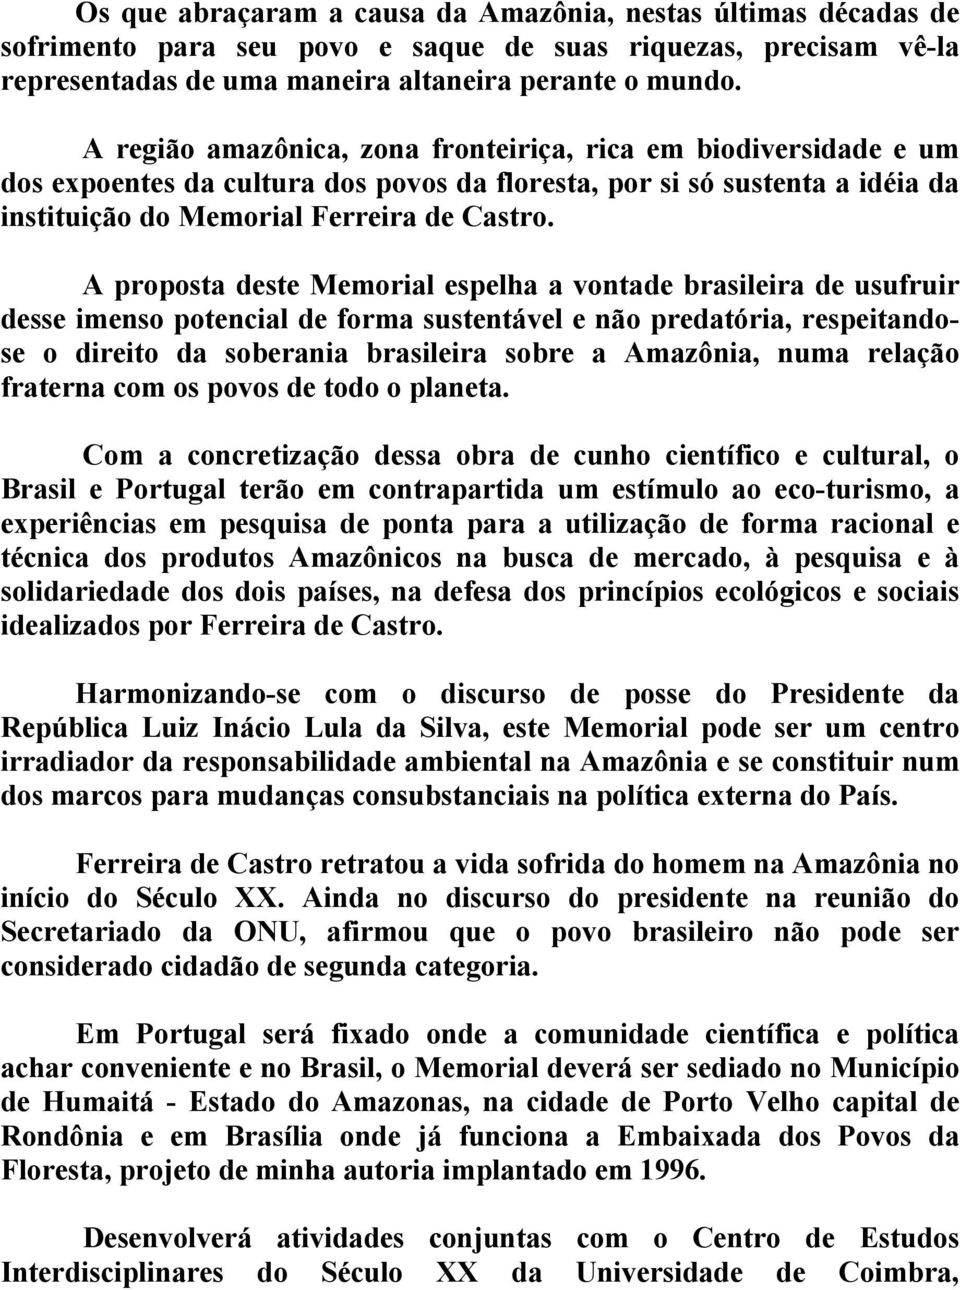 A proposta deste Memorial espelha a vontade brasileira de usufruir desse imenso potencial de forma sustentável e não predatória, respeitandose o direito da soberania brasileira sobre a Amazônia, numa